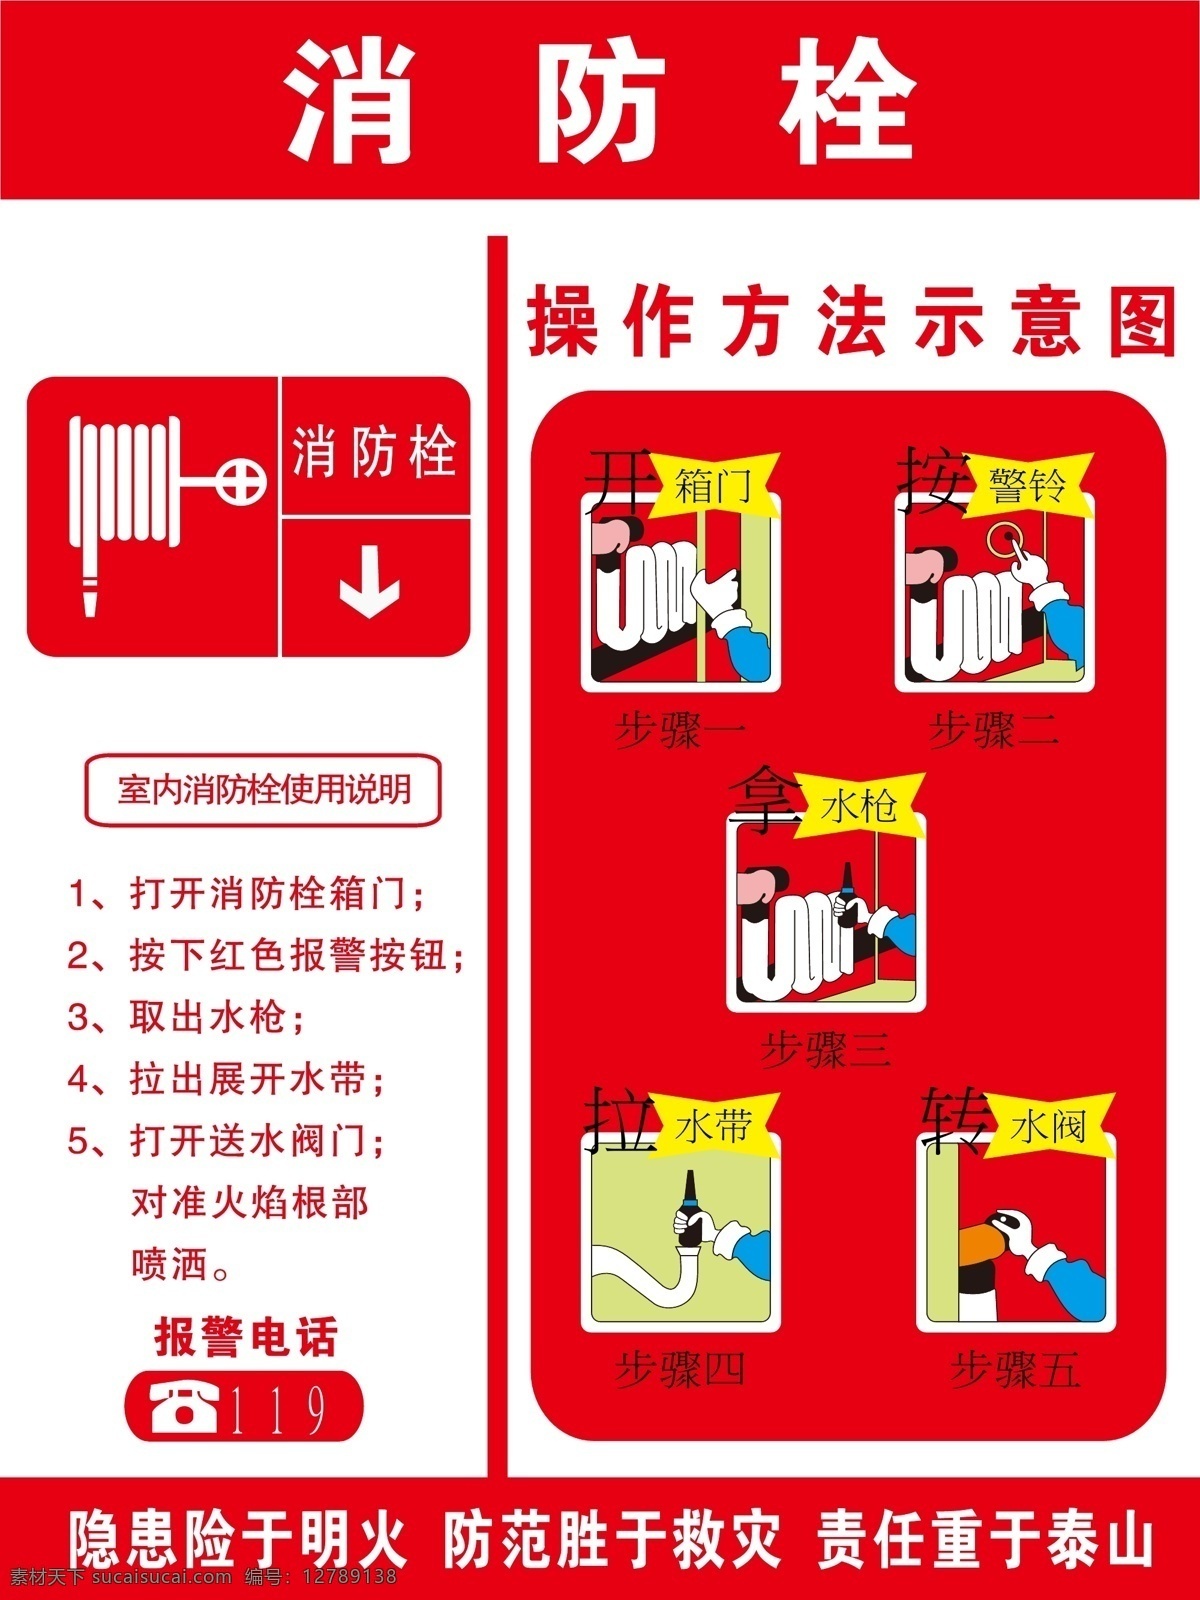 消防栓 使用说明 消防栓使用 说明 操作示意图 消防栓操作